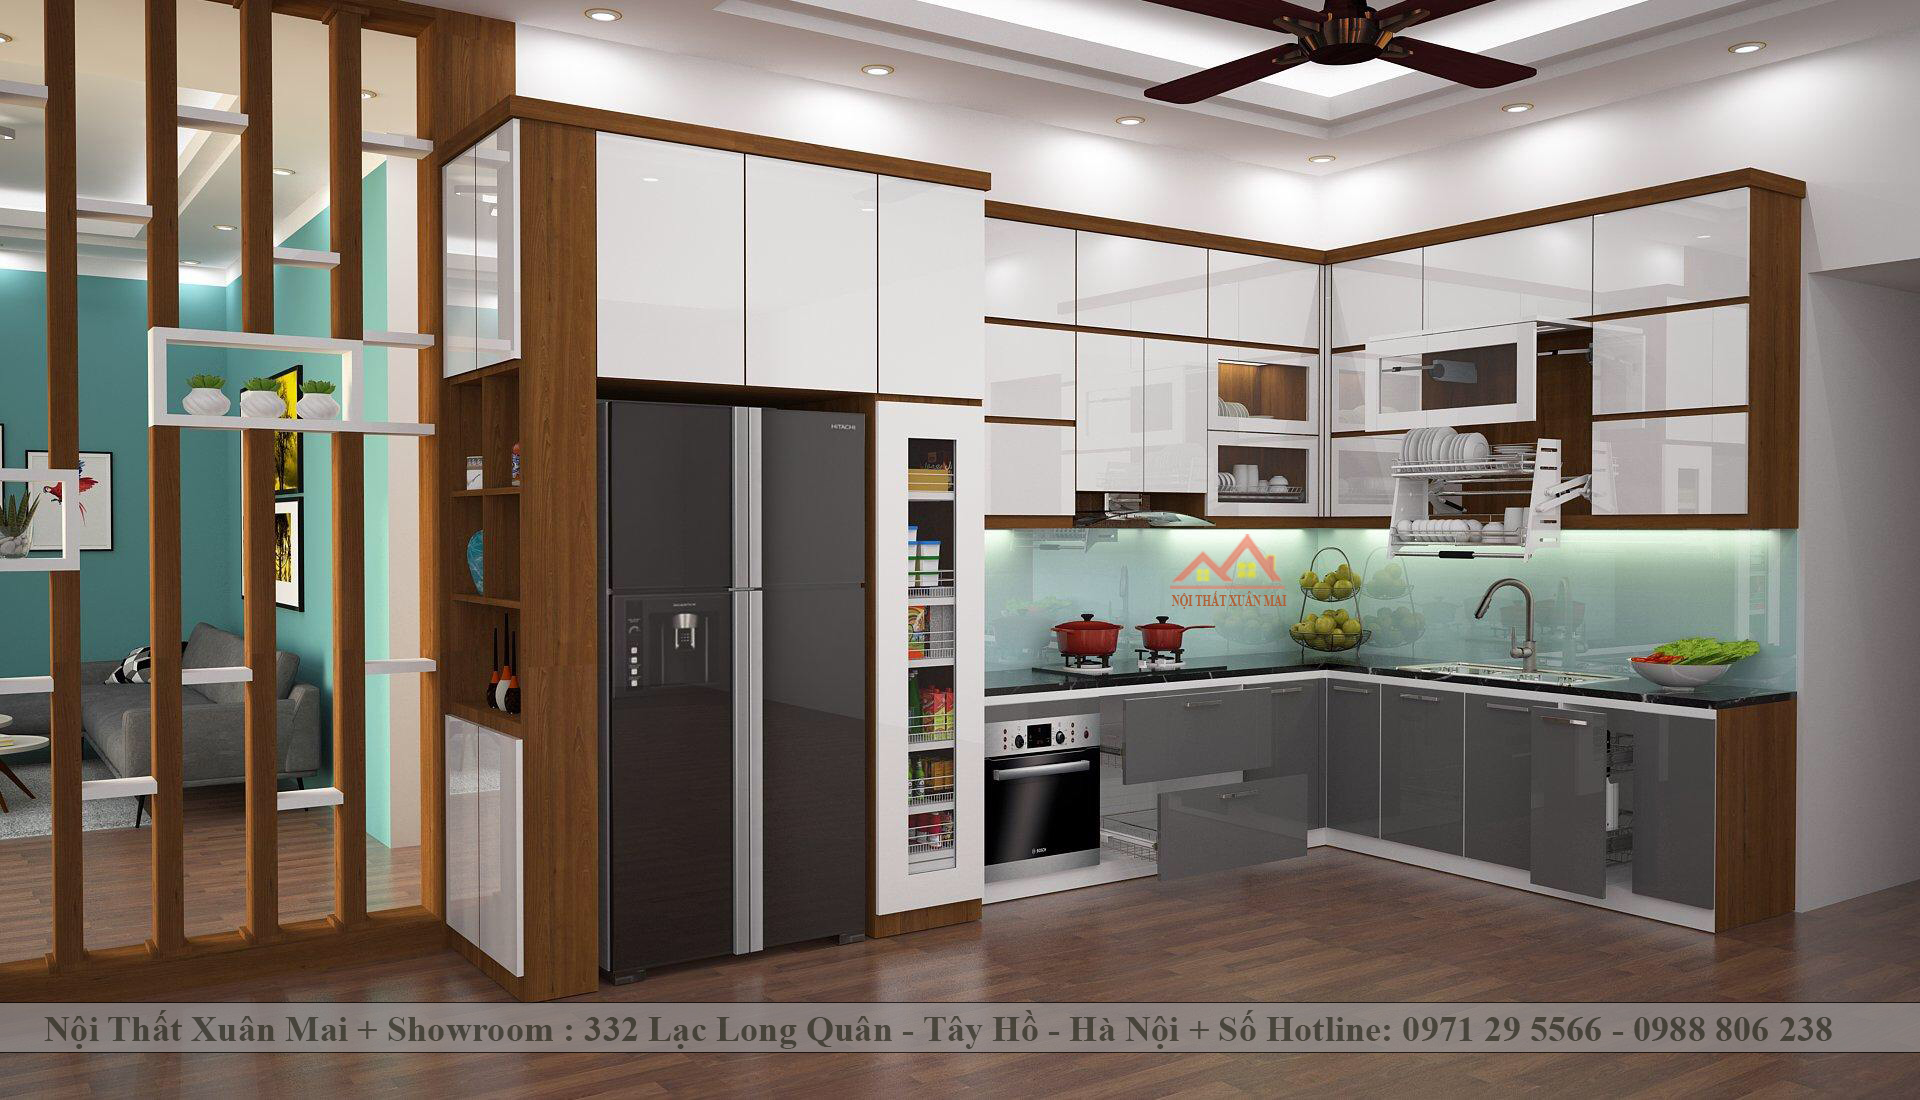 tủ bếp acrylic 2 tầng, tráng xám kết hợp kính ốp tường màu xanh hiện đại, trẻ trung